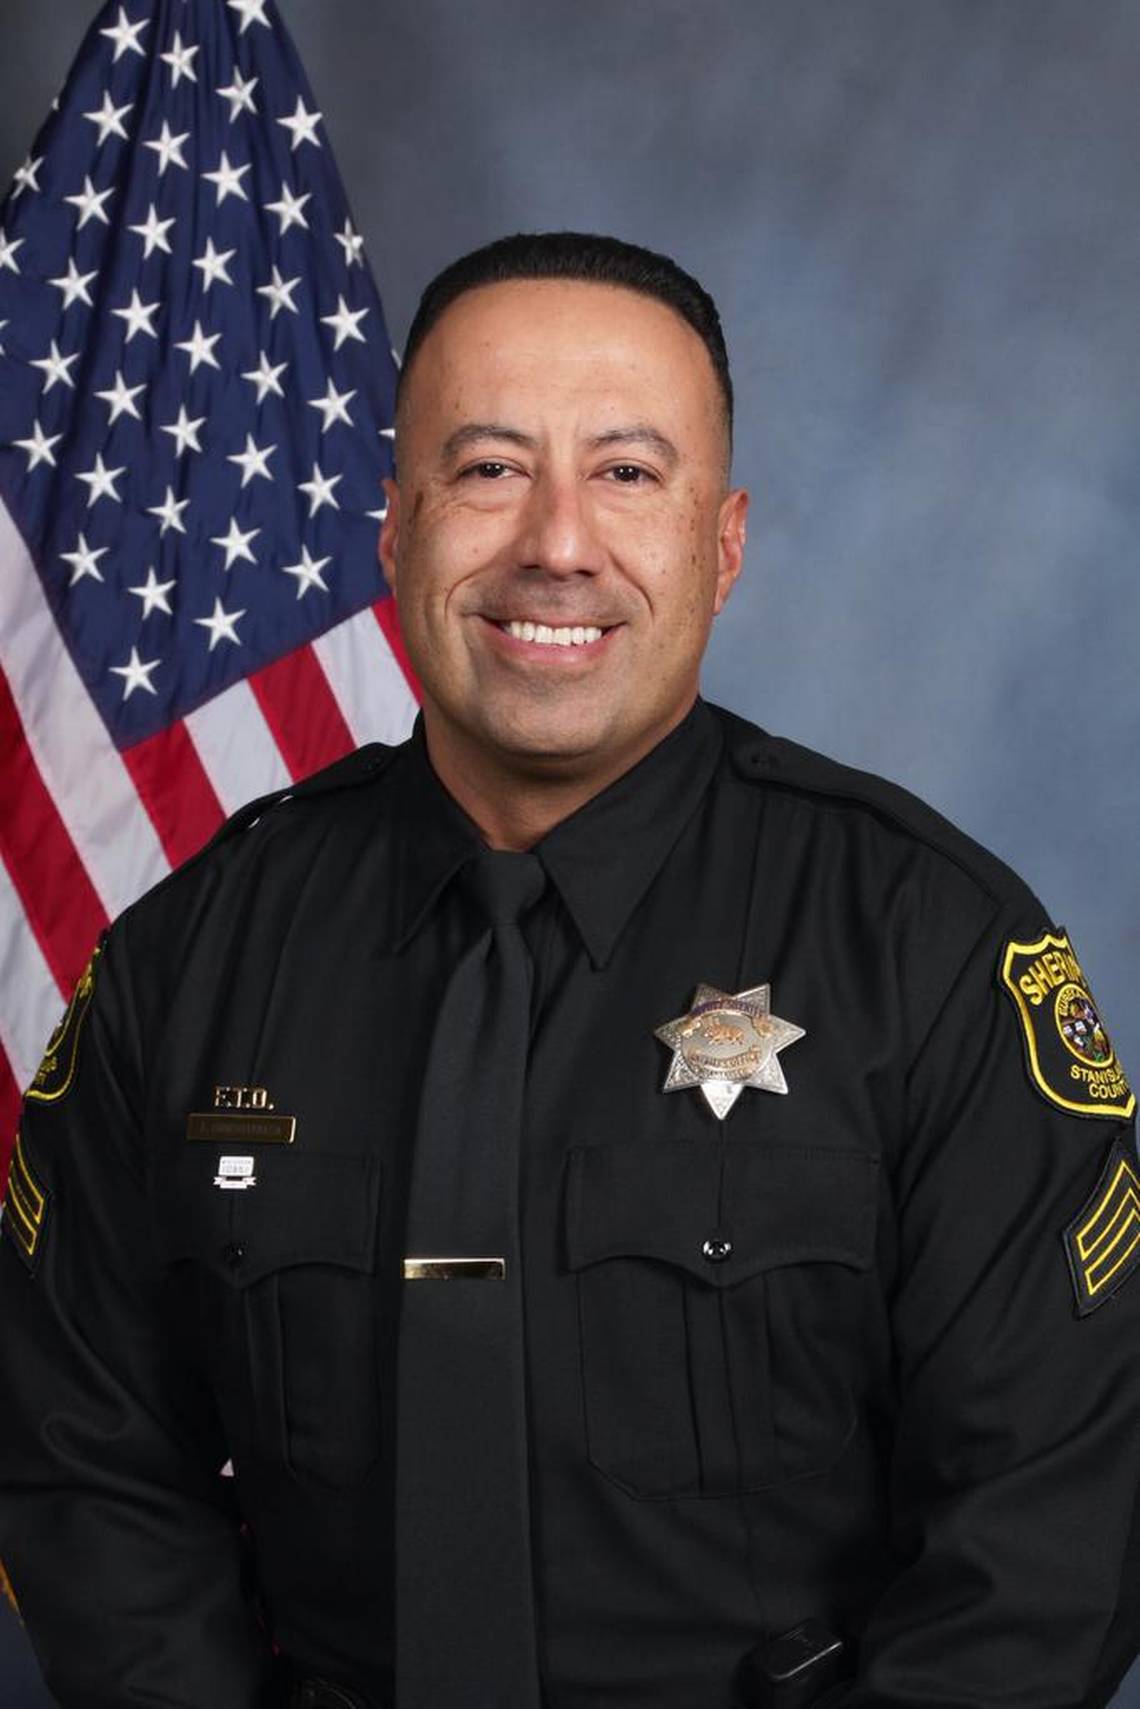 Deputy Sheriff Antonio Hinostroza, Stanislaus County Sheriff's